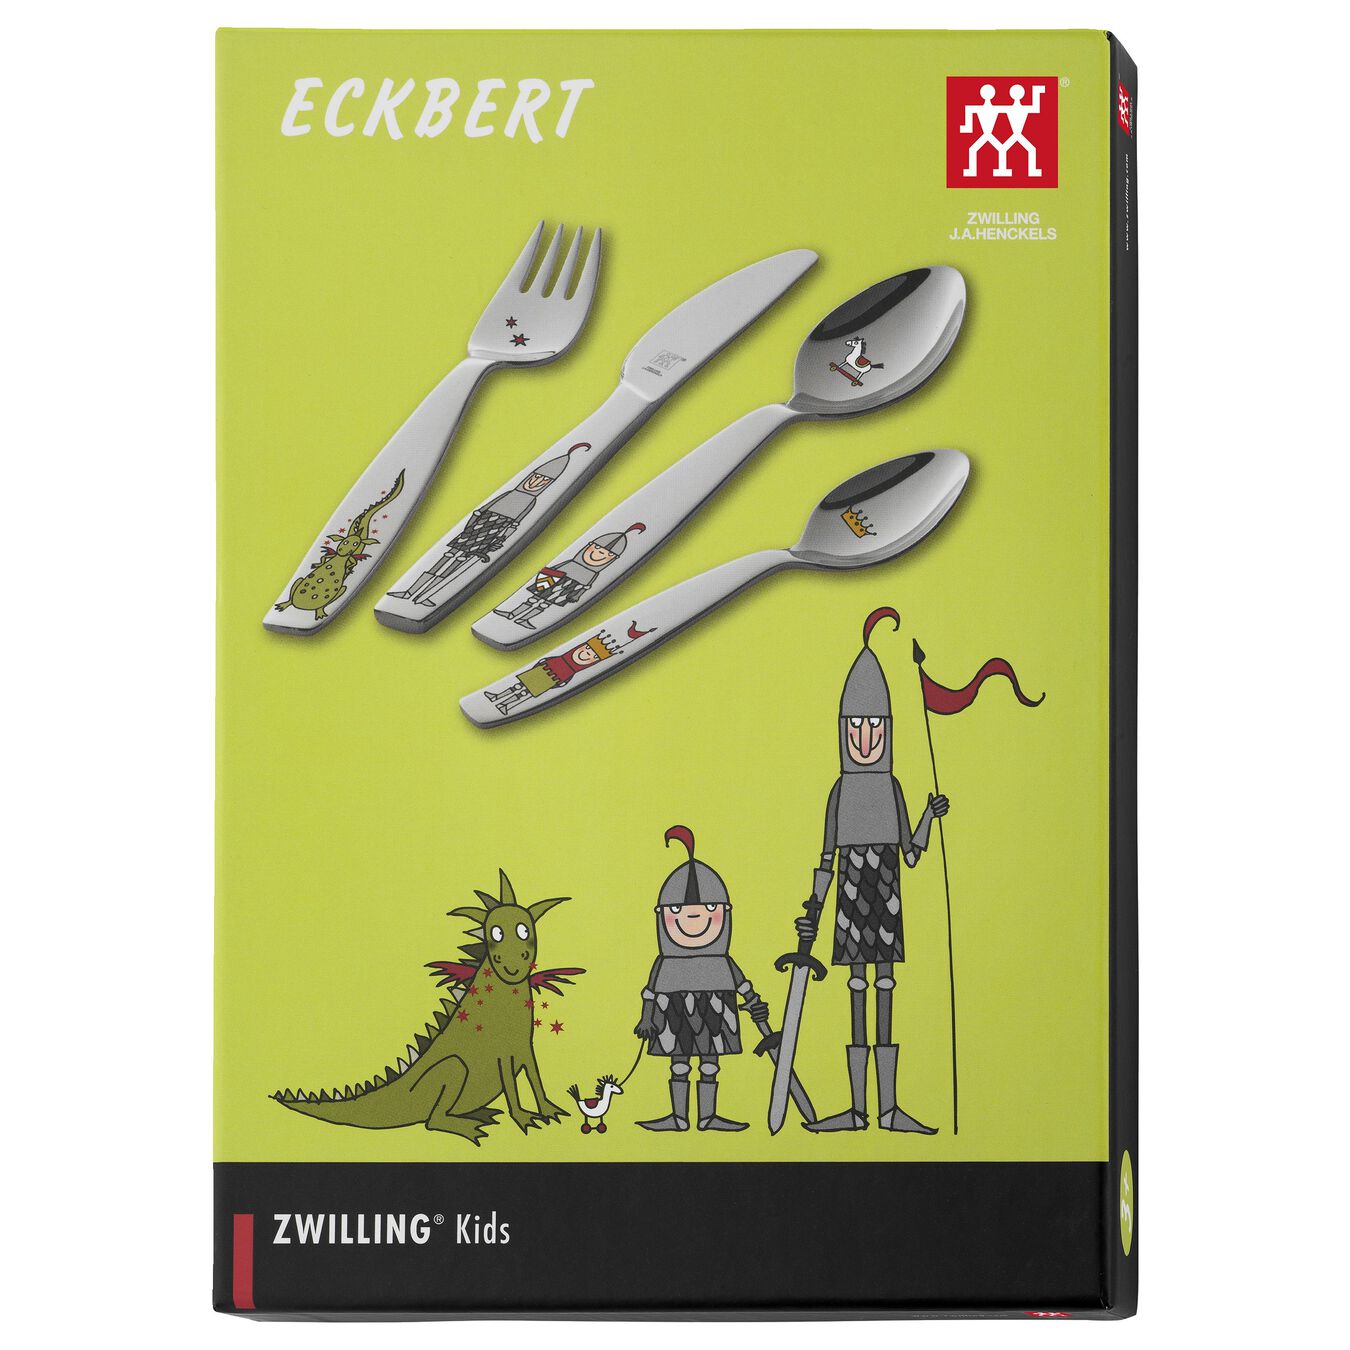 Bestek Zwilling Kids Eckbert 4-delig